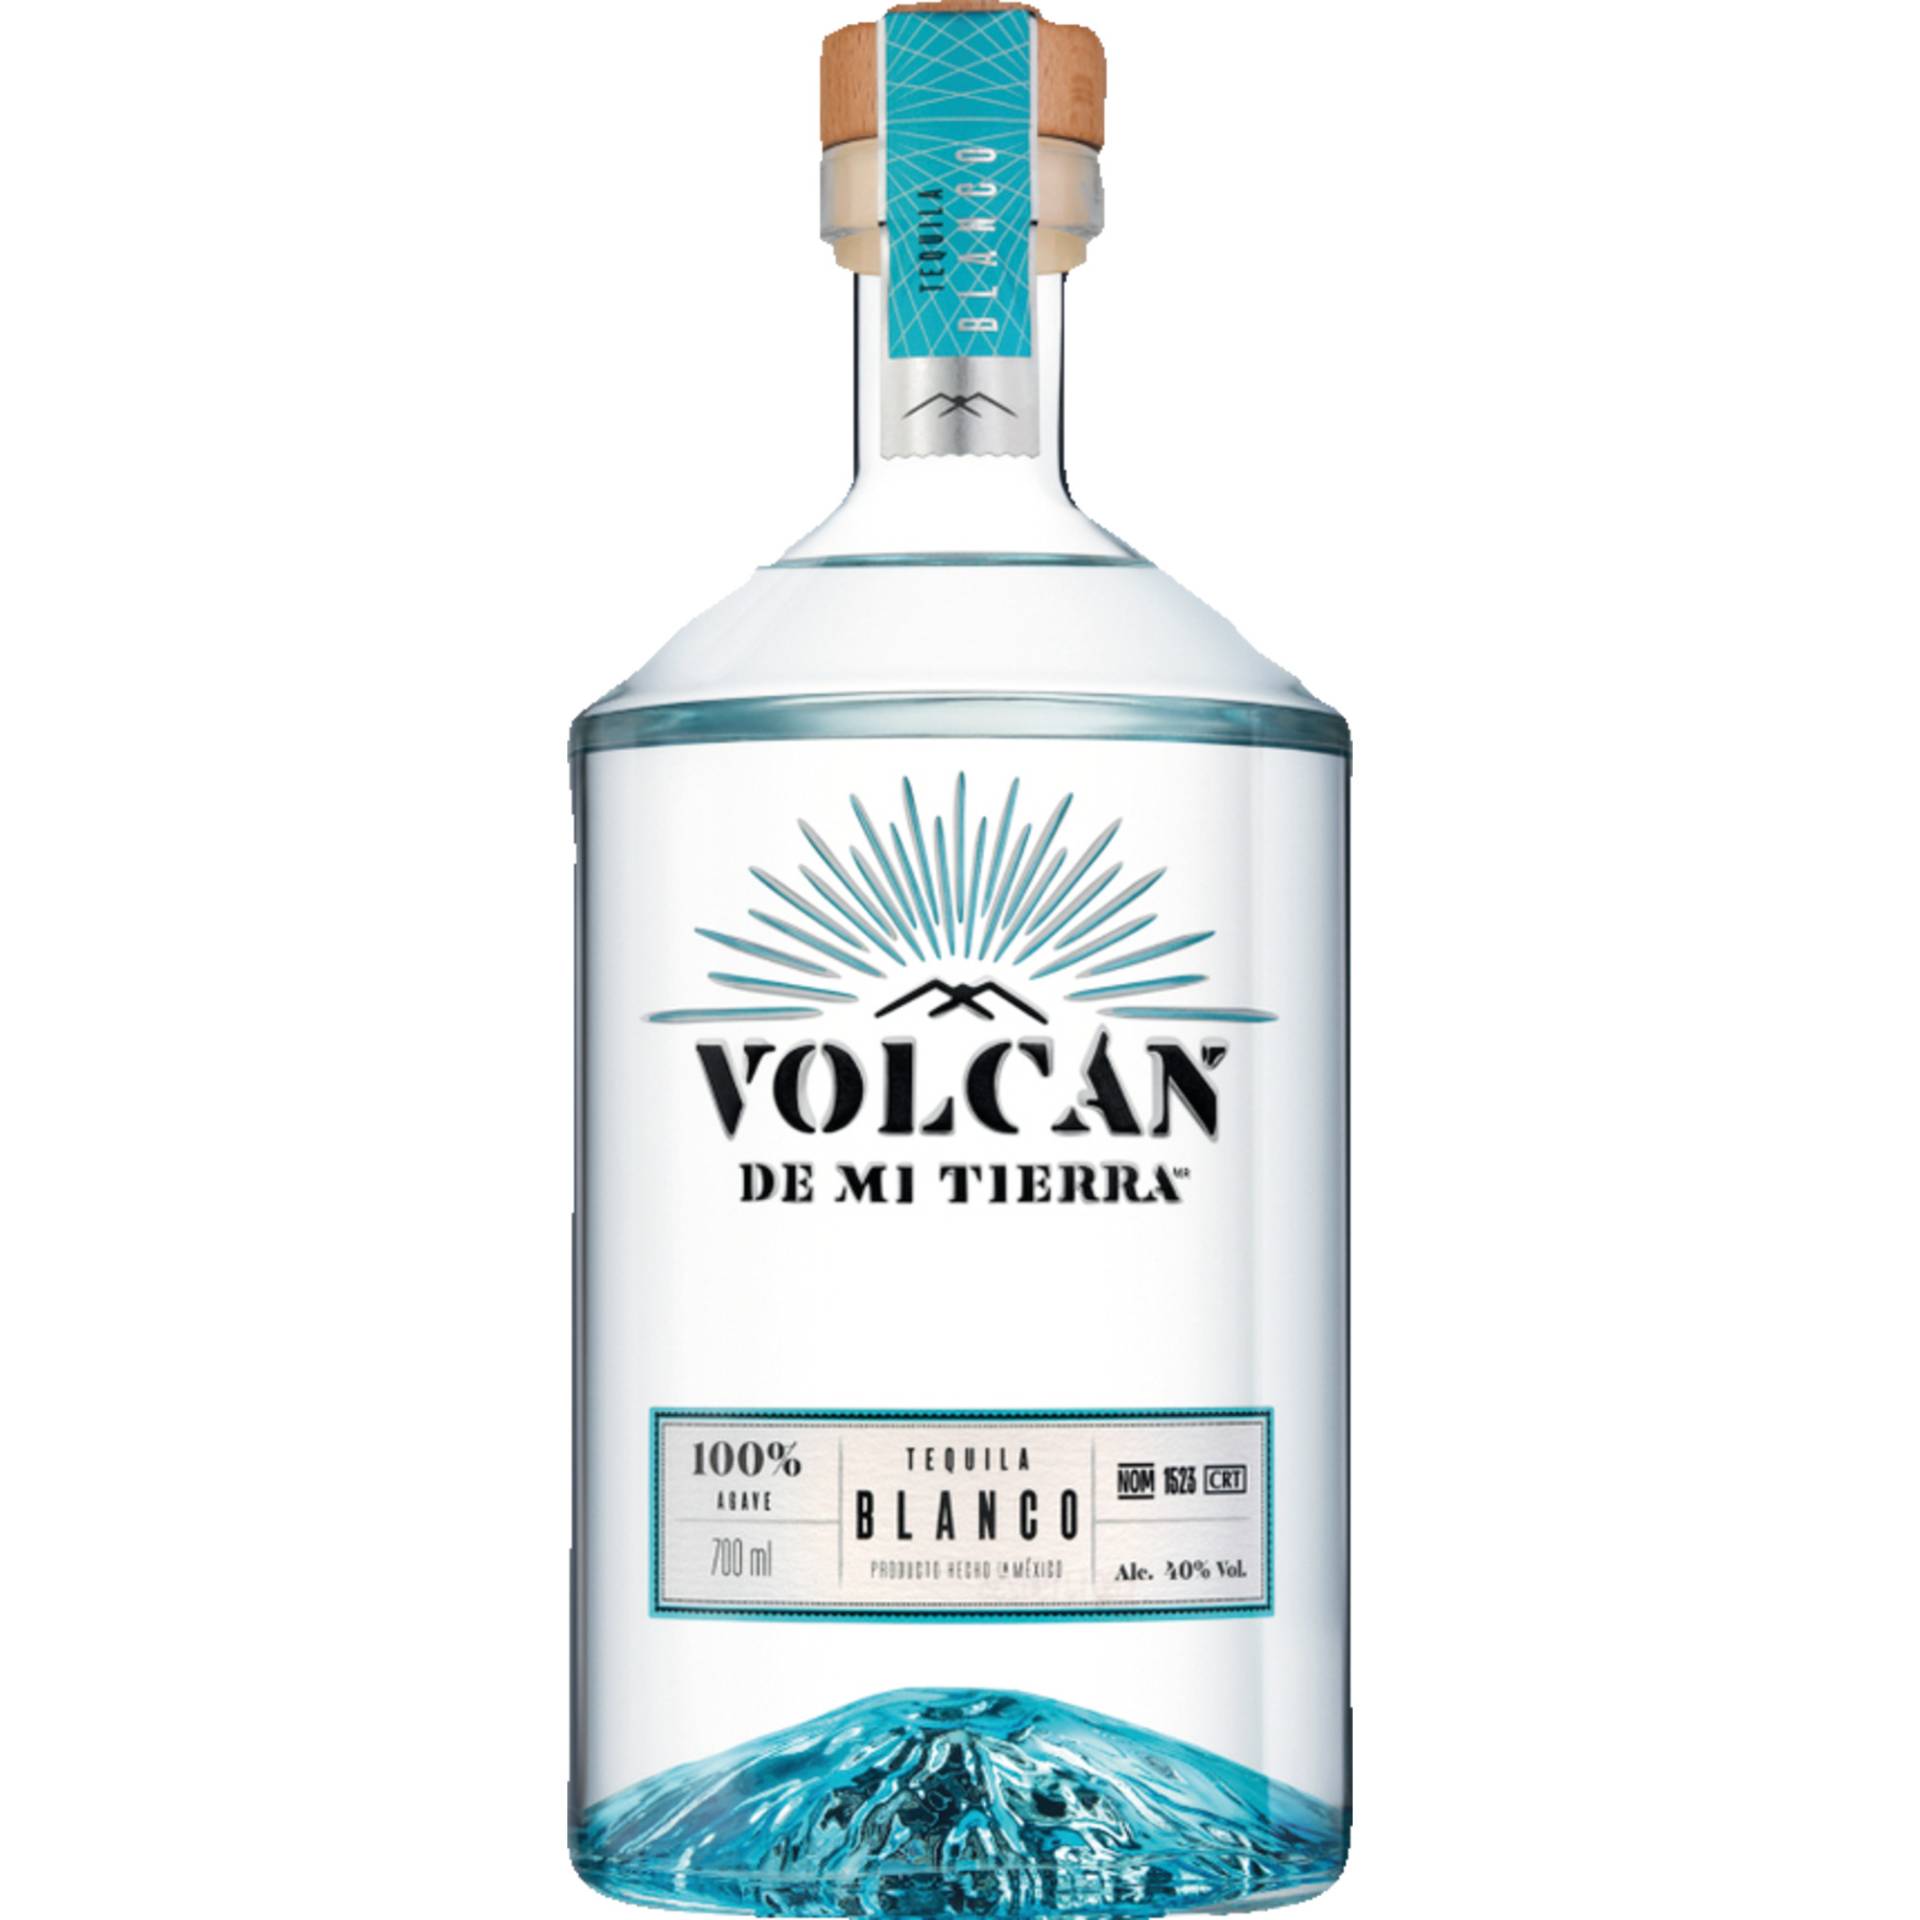 Volcan de Mi Tierra Blanco Tequila, Mexico 40 % vol. 0,7 L, Spirituosen von Moët Hennessy Deutschland GmbH , Seidlstrasse 23, 80335 München, Deutschland